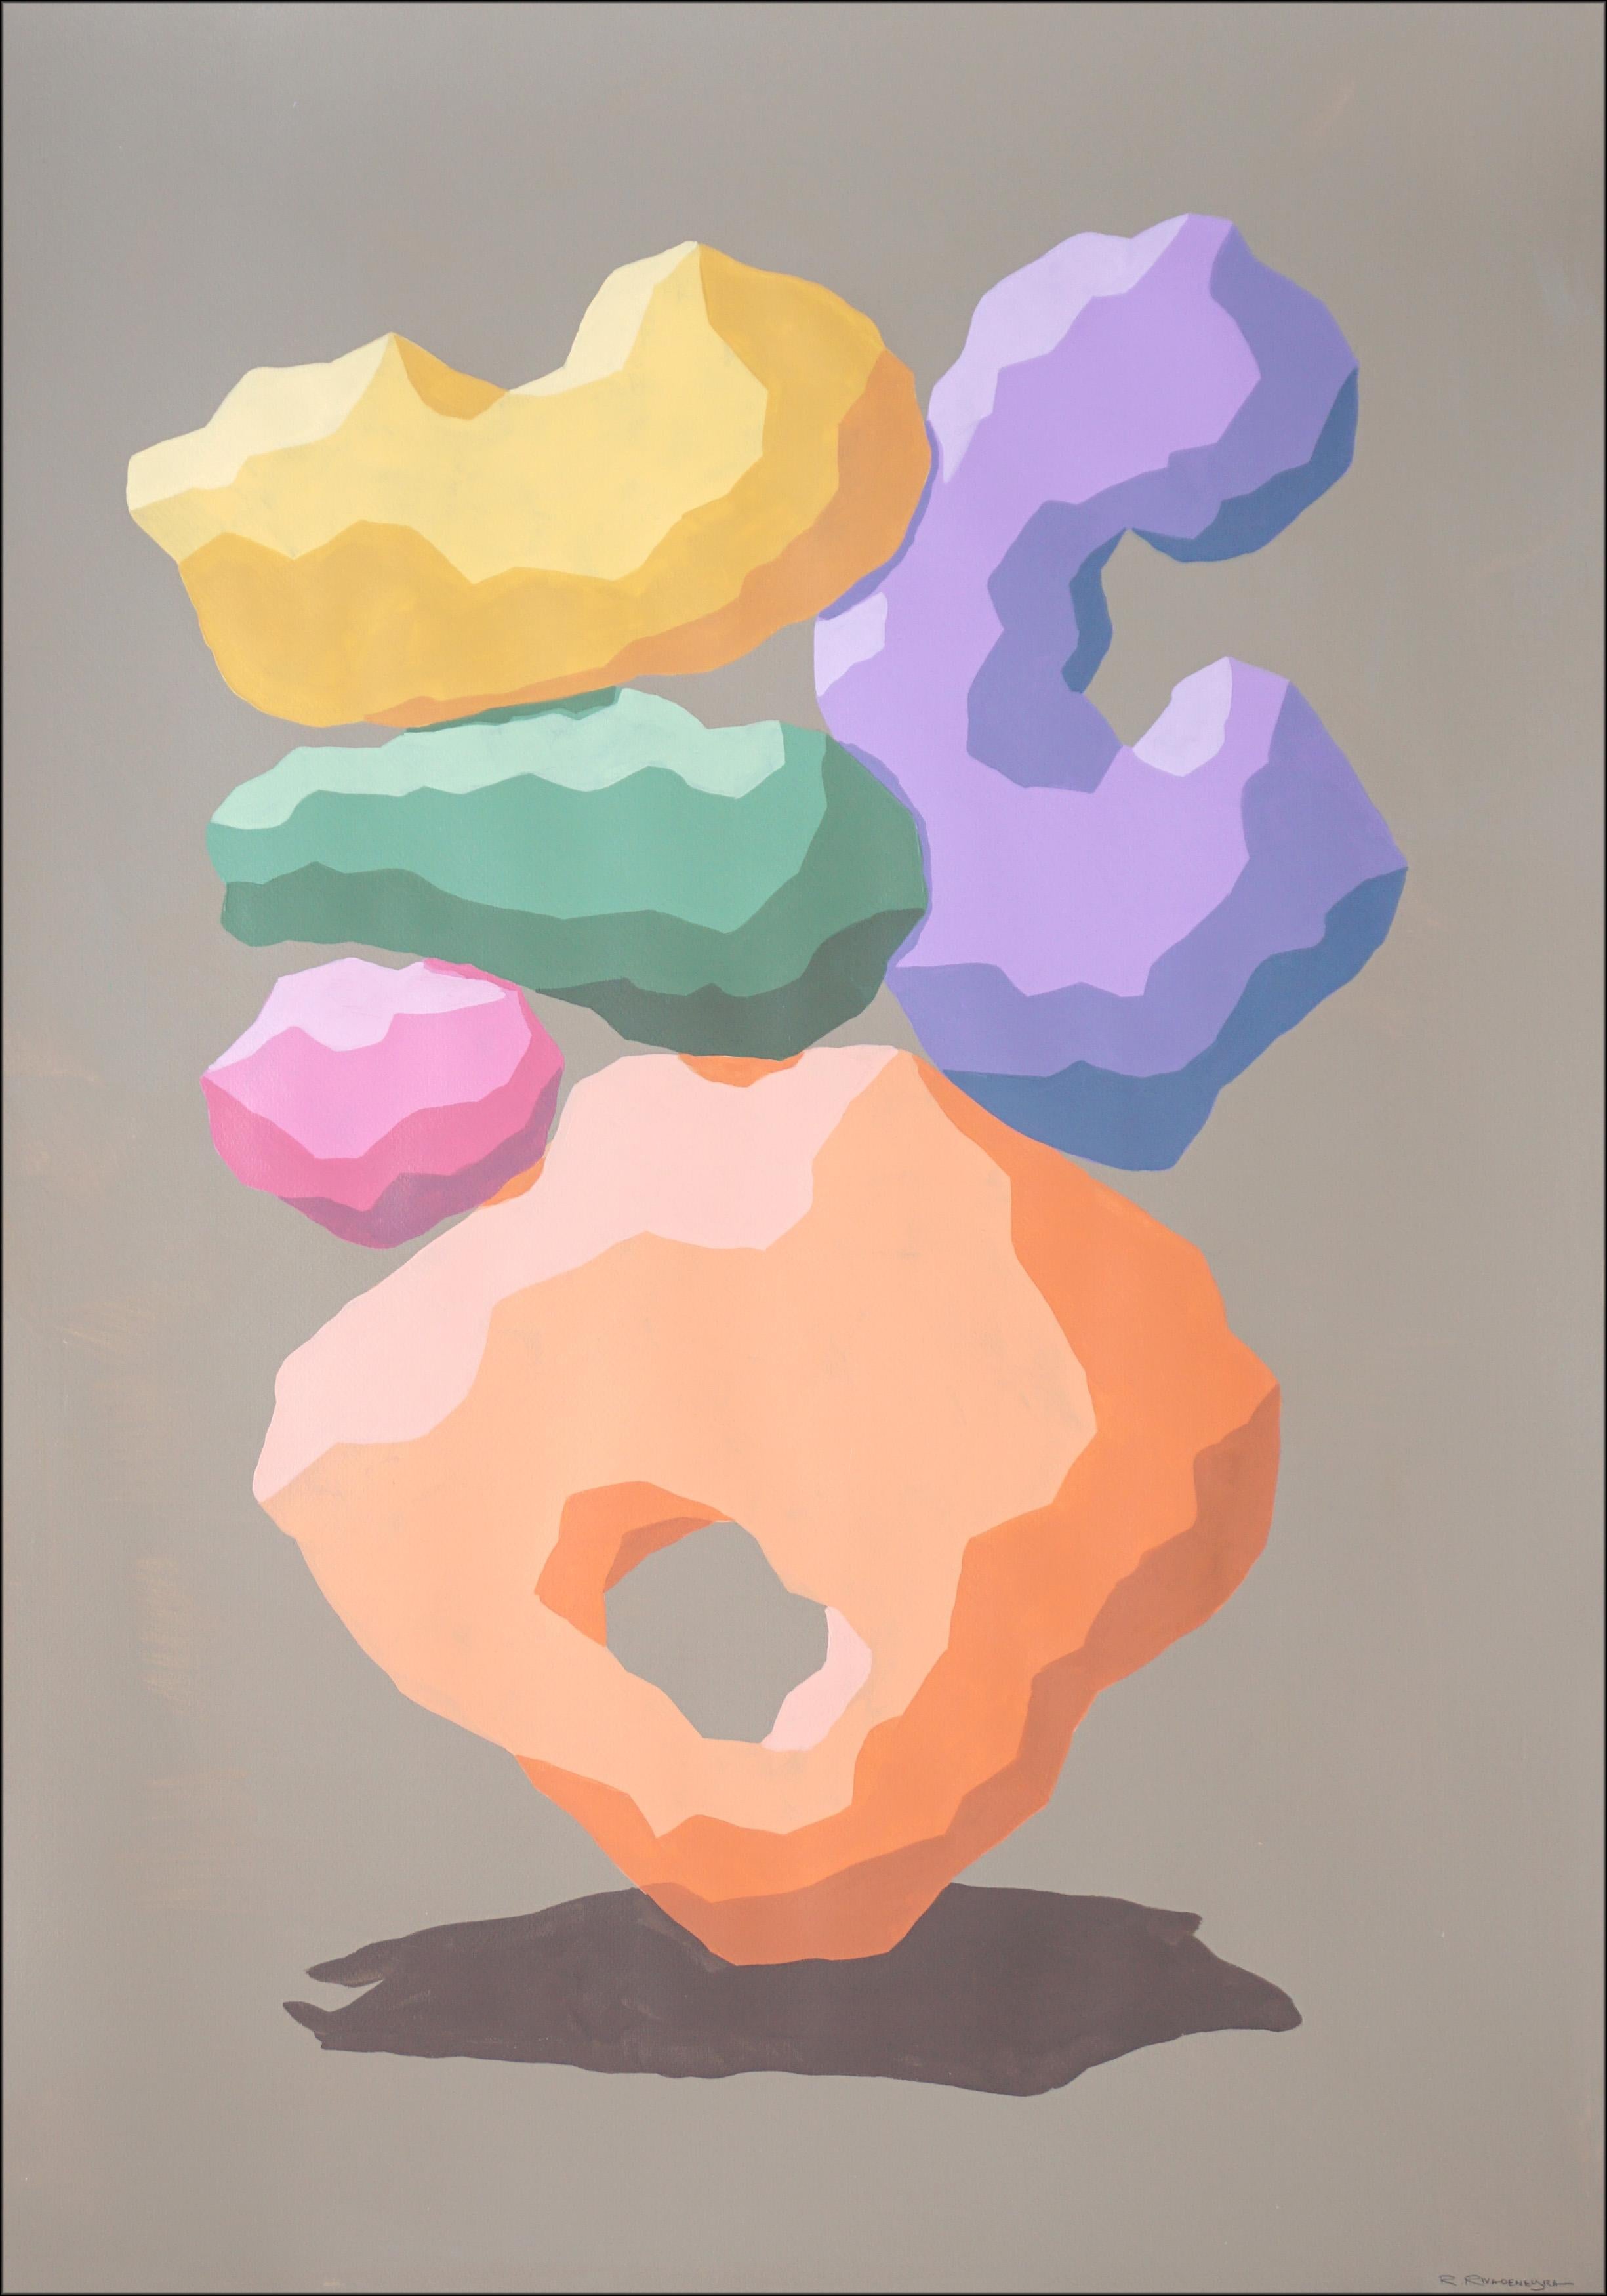 Still-Life Painting Ryan Rivadeneyra - The Moderns Modern Monument, 3D Totem Sculpture in Pastel Tones, Orange, Pink, Purple Shapes (Sculpture totémique en 3D dans les tons pastel, orange, rose, violet)